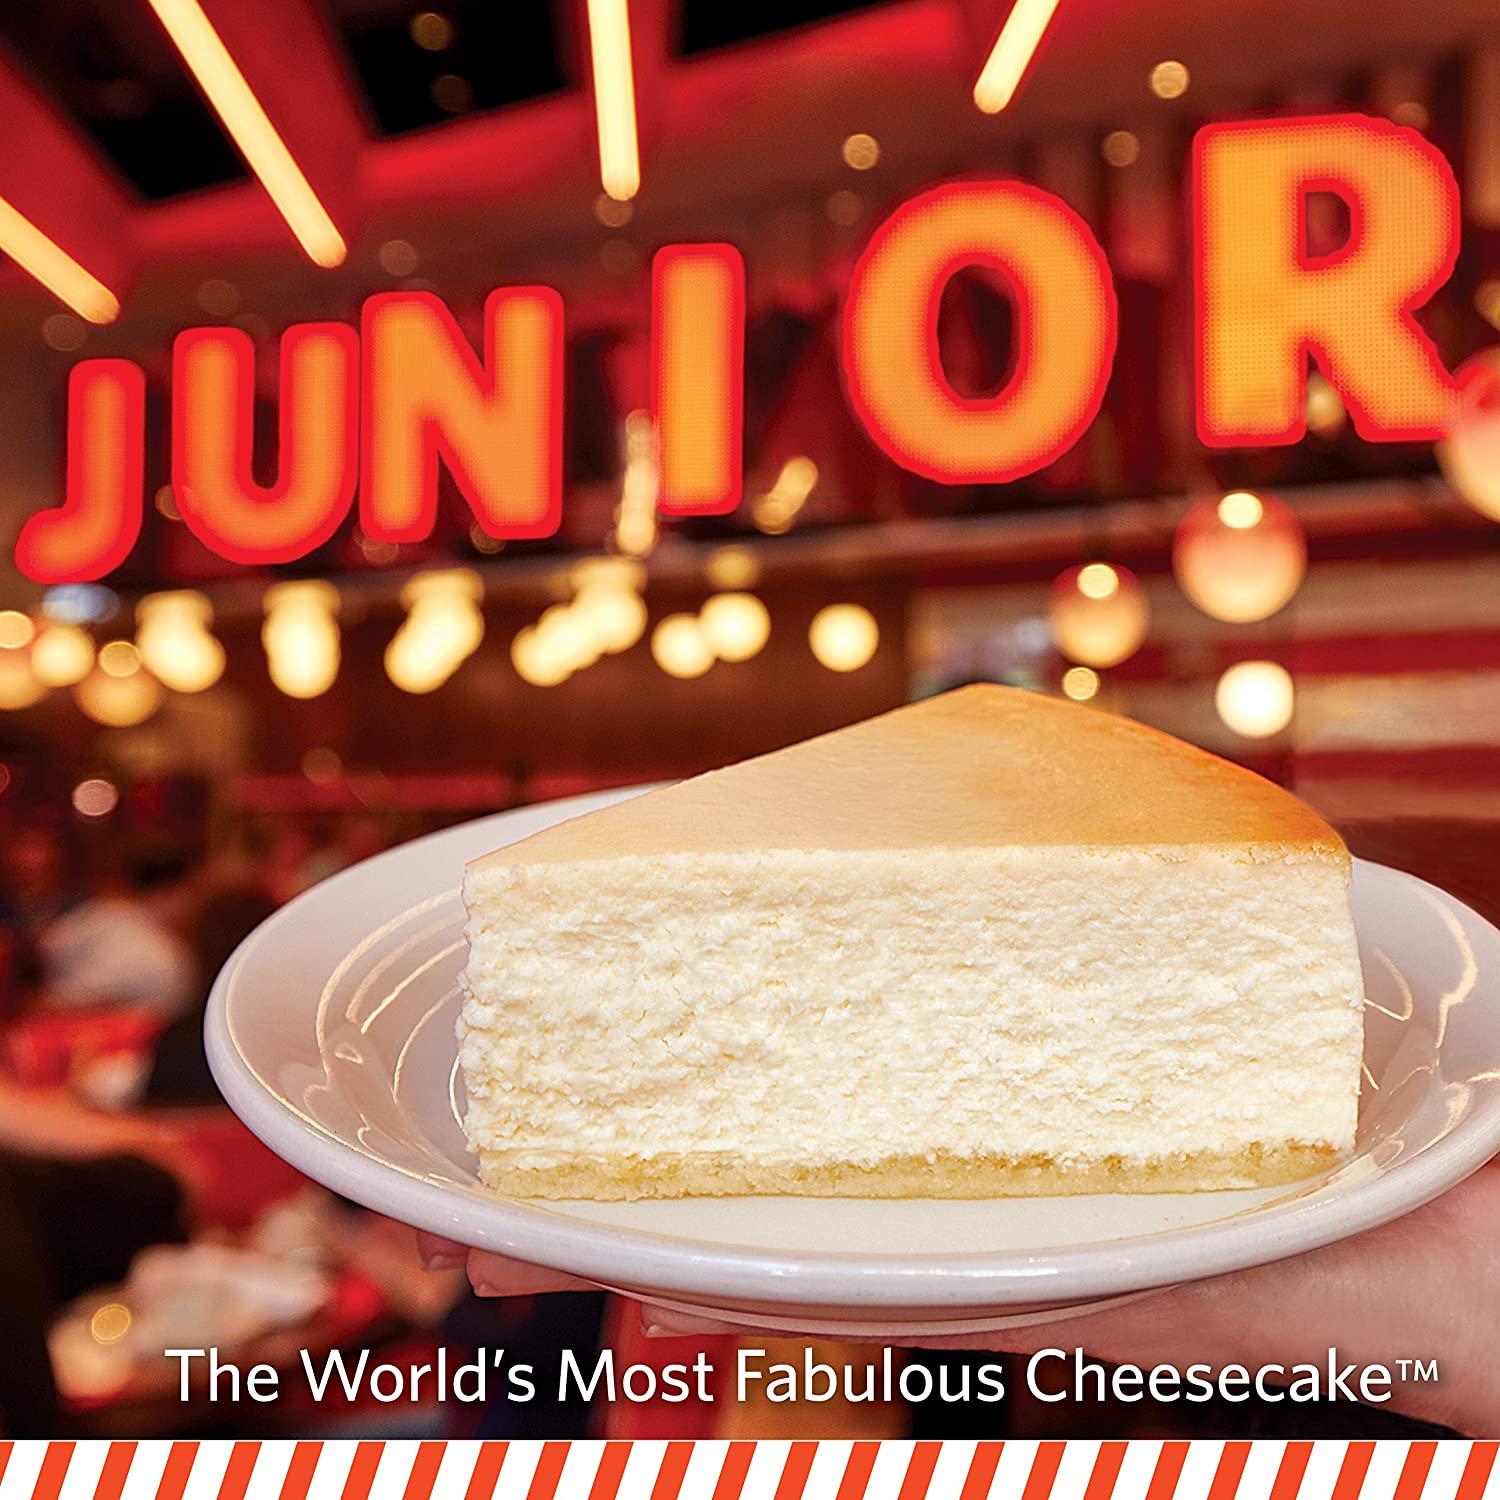 Junior's Cheesecake 8" New York Original Plain Cheesecake (Serves 12)